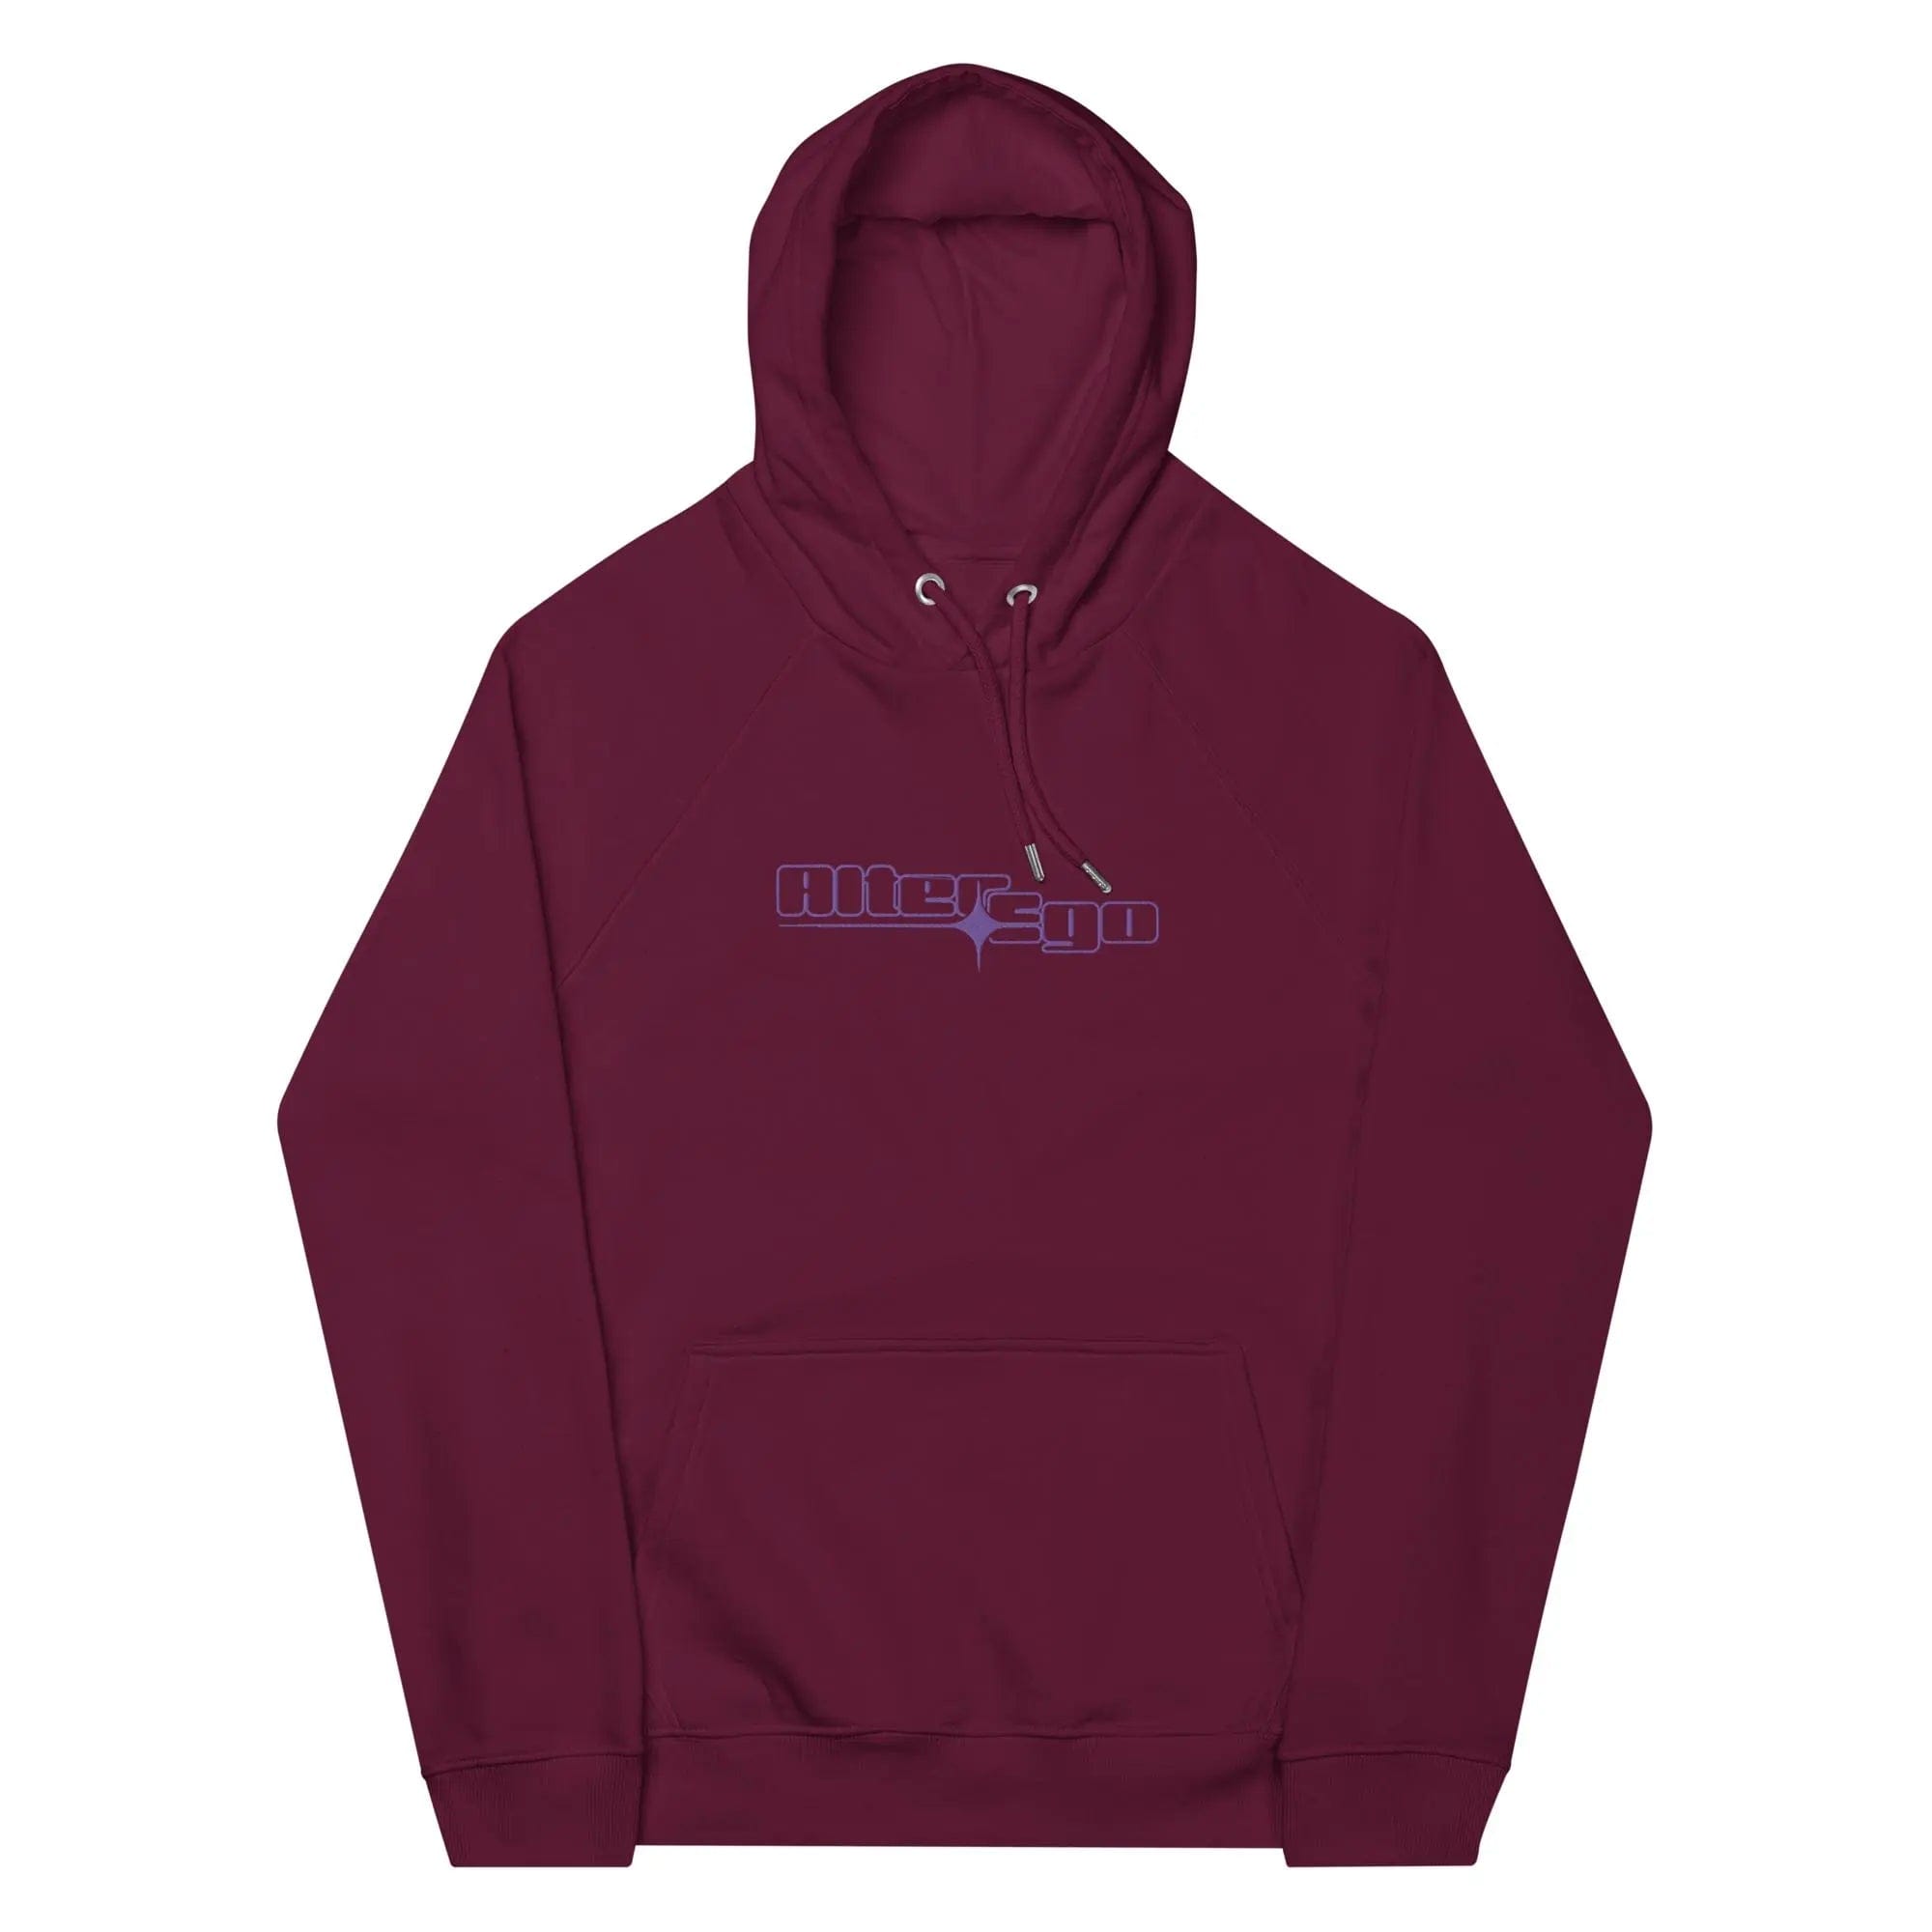 unisex-eco-raglan-hoodie-burgundy-front-64b069370d1f8-10401854.jpg